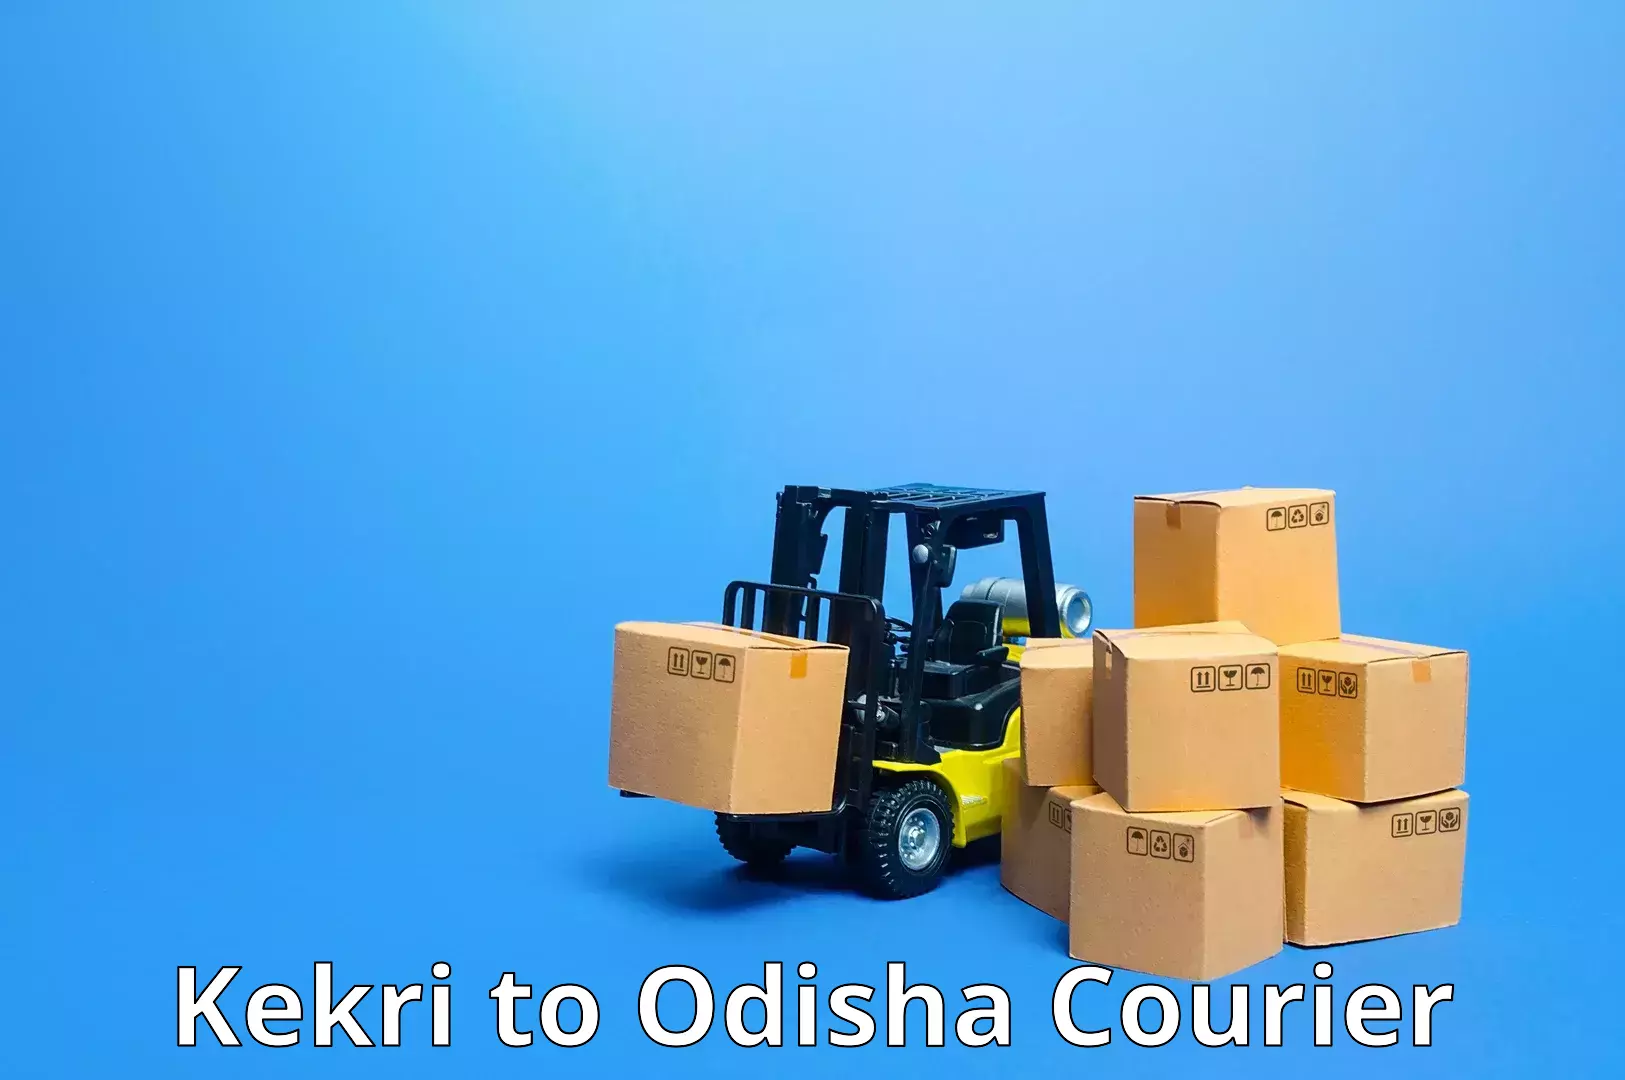 24-hour courier service Kekri to Odisha